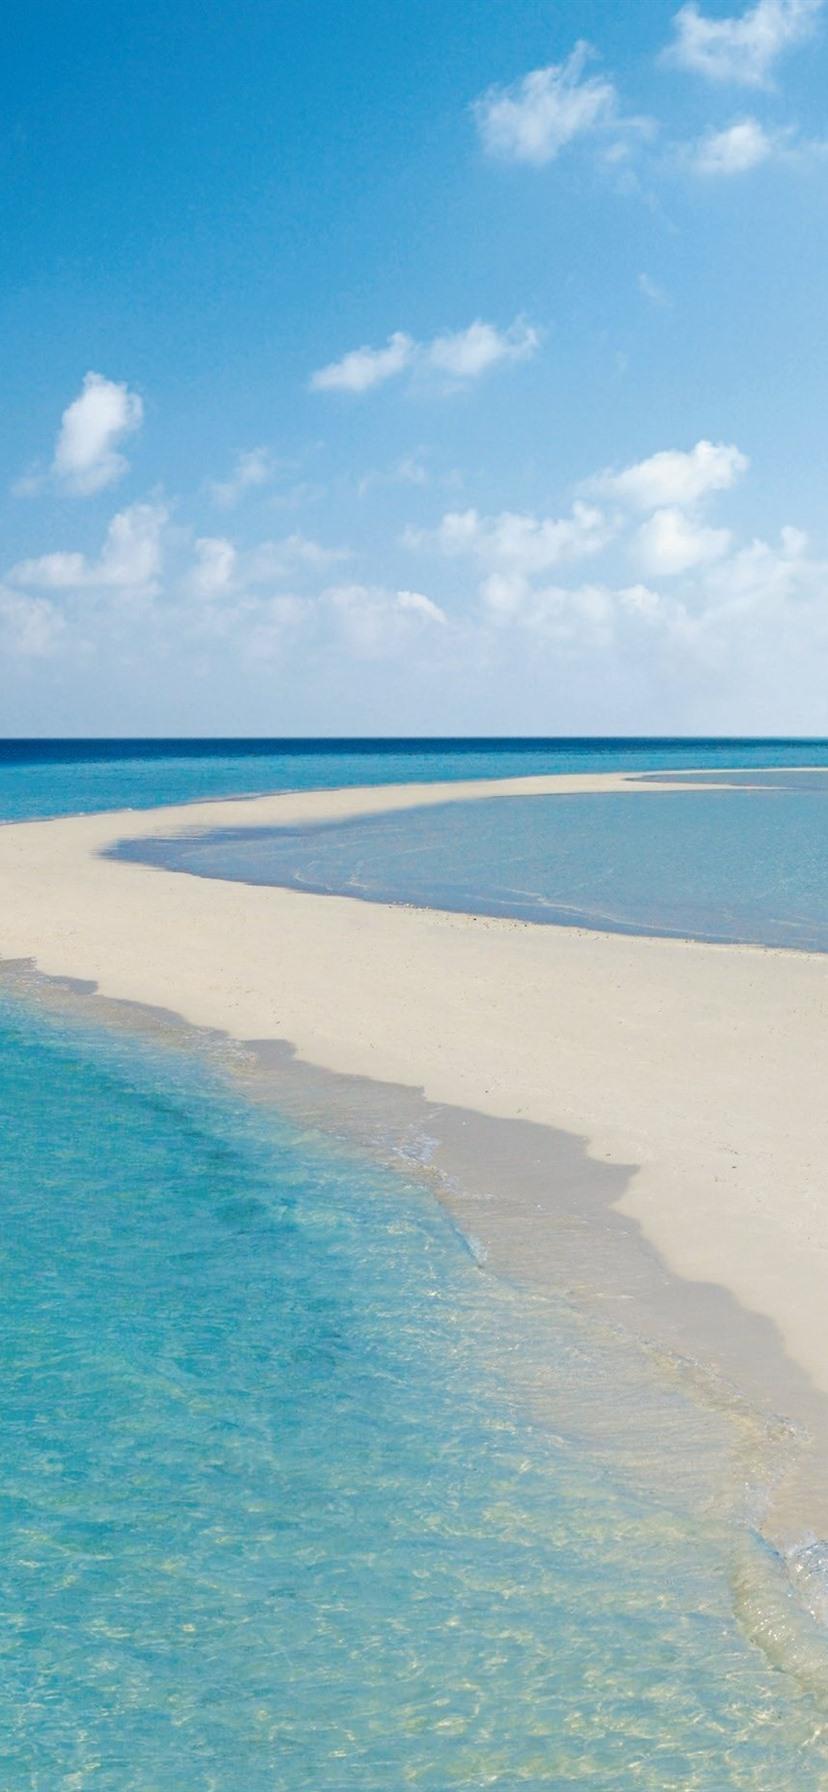 Maldives, beach, sea, chairs 828x1792 iPhone XR wallpaper